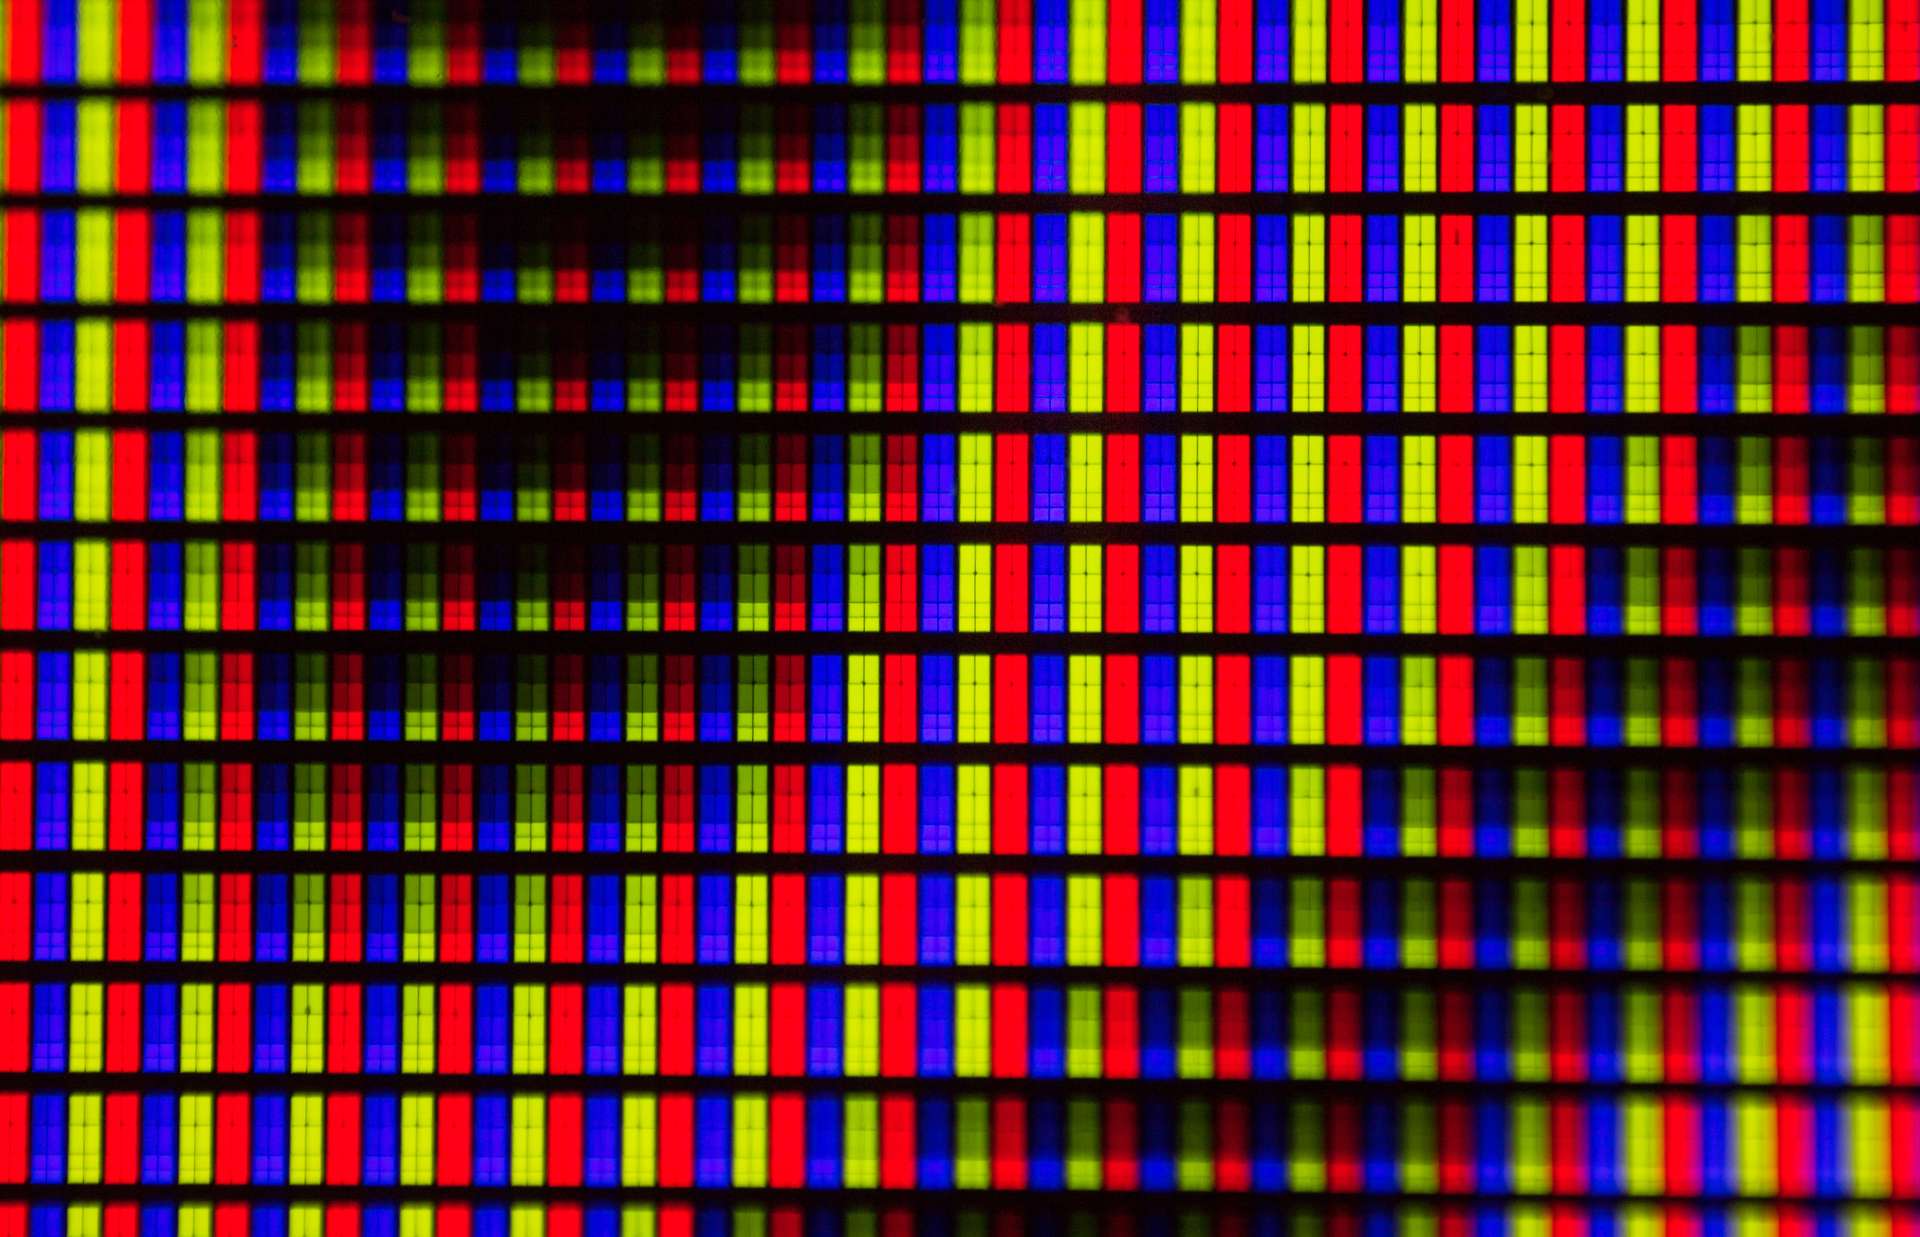 rgb pixels in a wave pattern